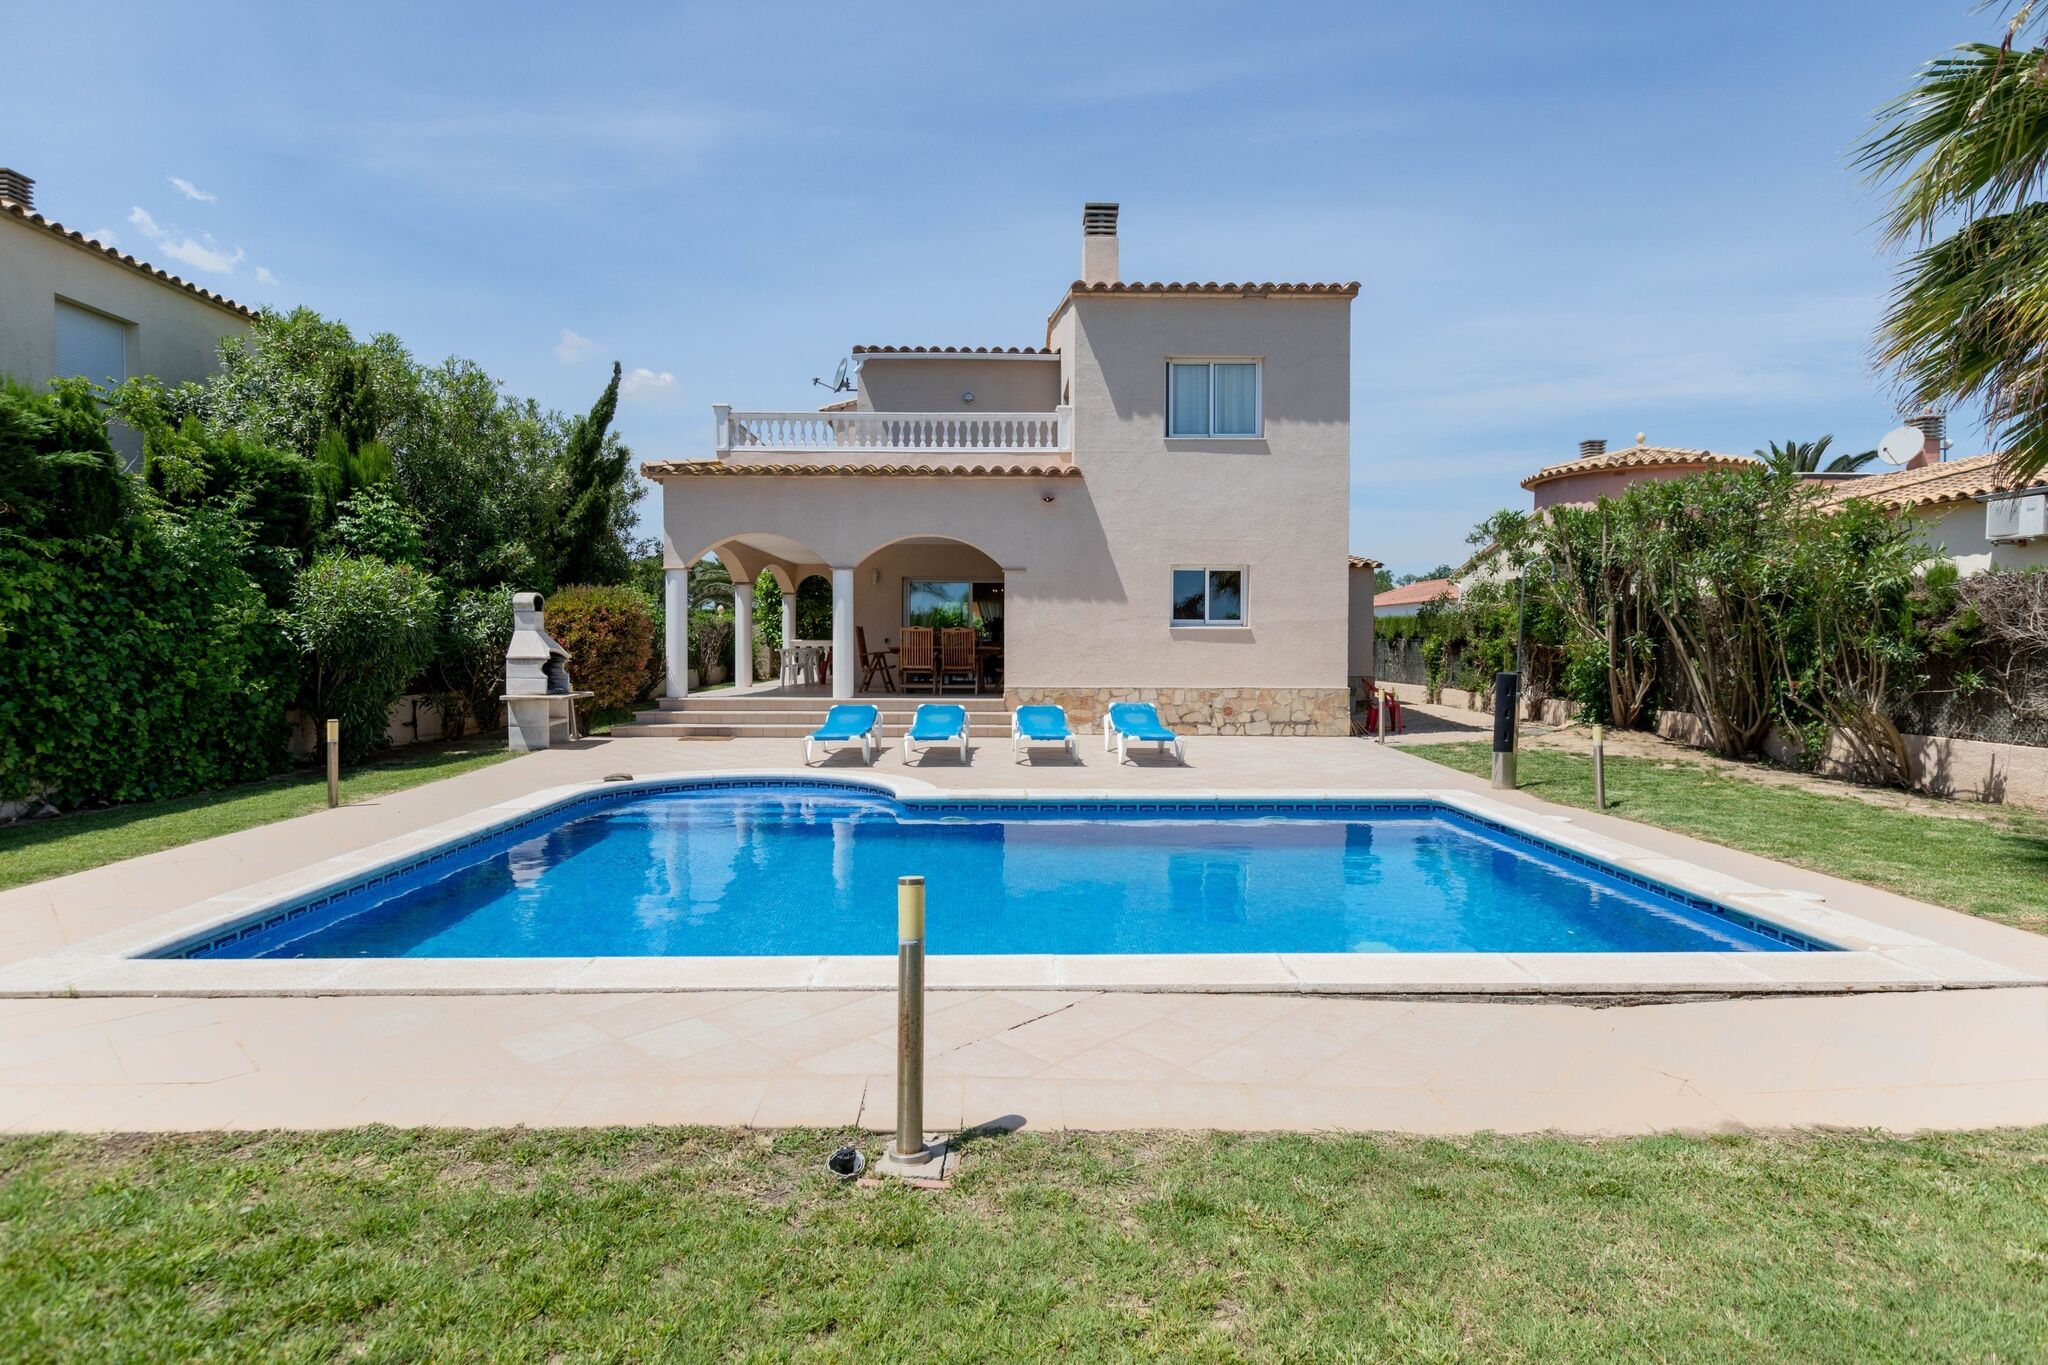 Freistehende Villa mit privatem Pool in der Nähe des Dorfes und Strand